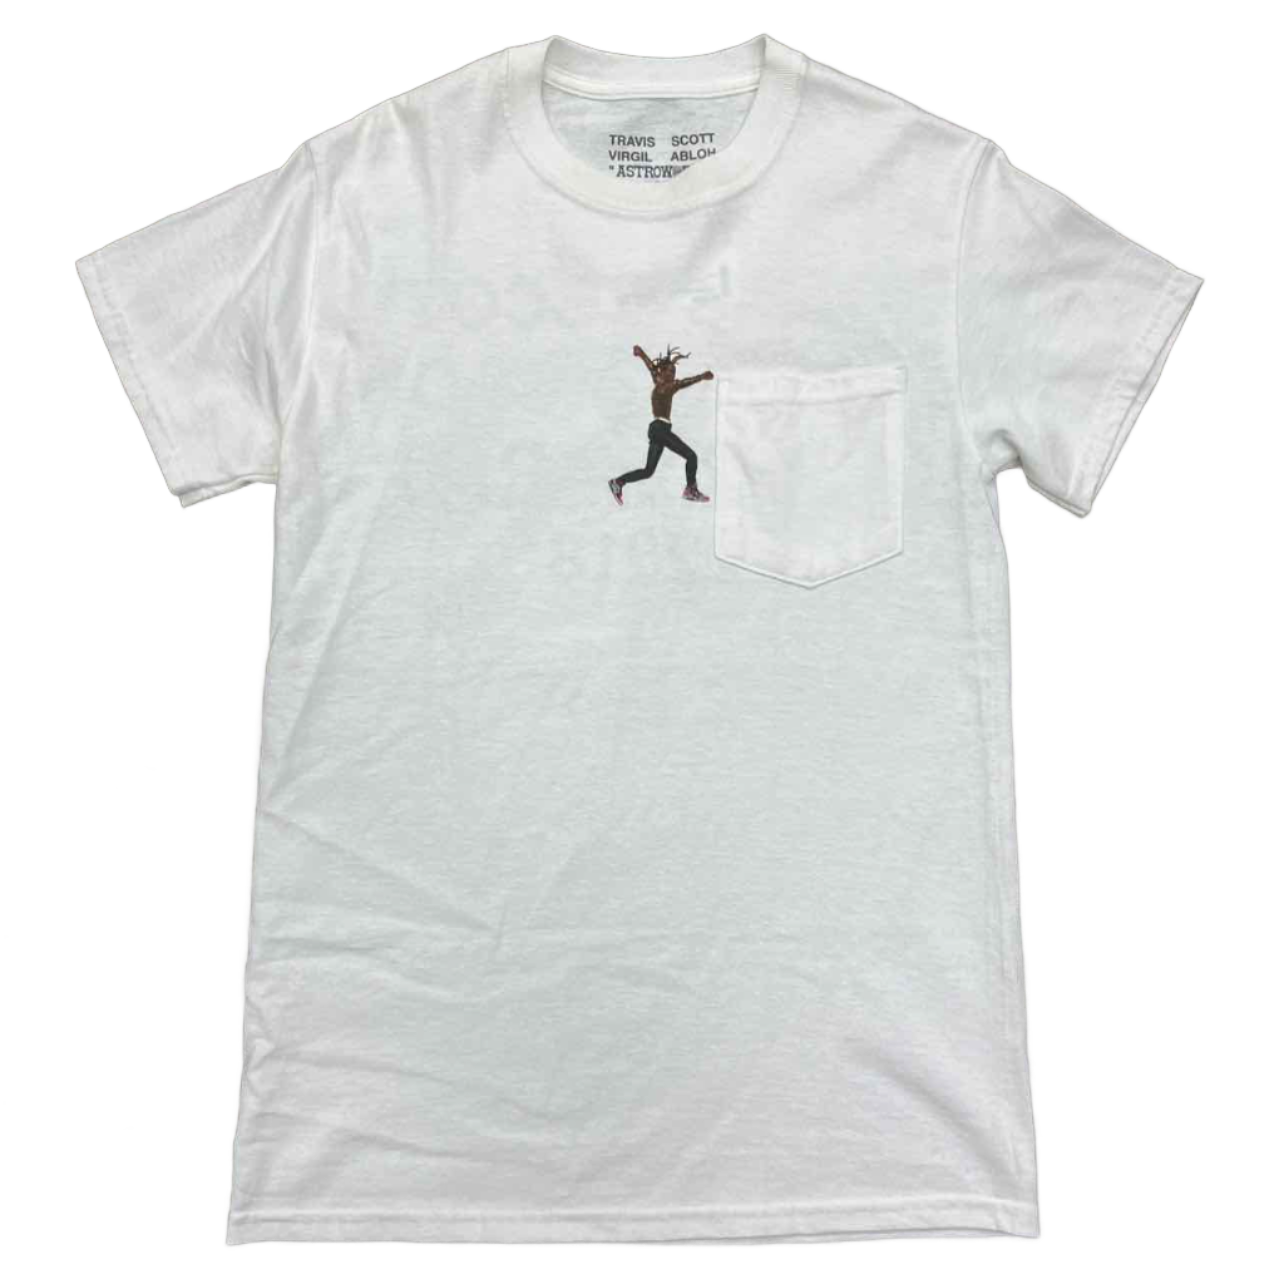 Travis Scott T-Shirt &quot;VIRGIL ABLOH&quot; Used Size S